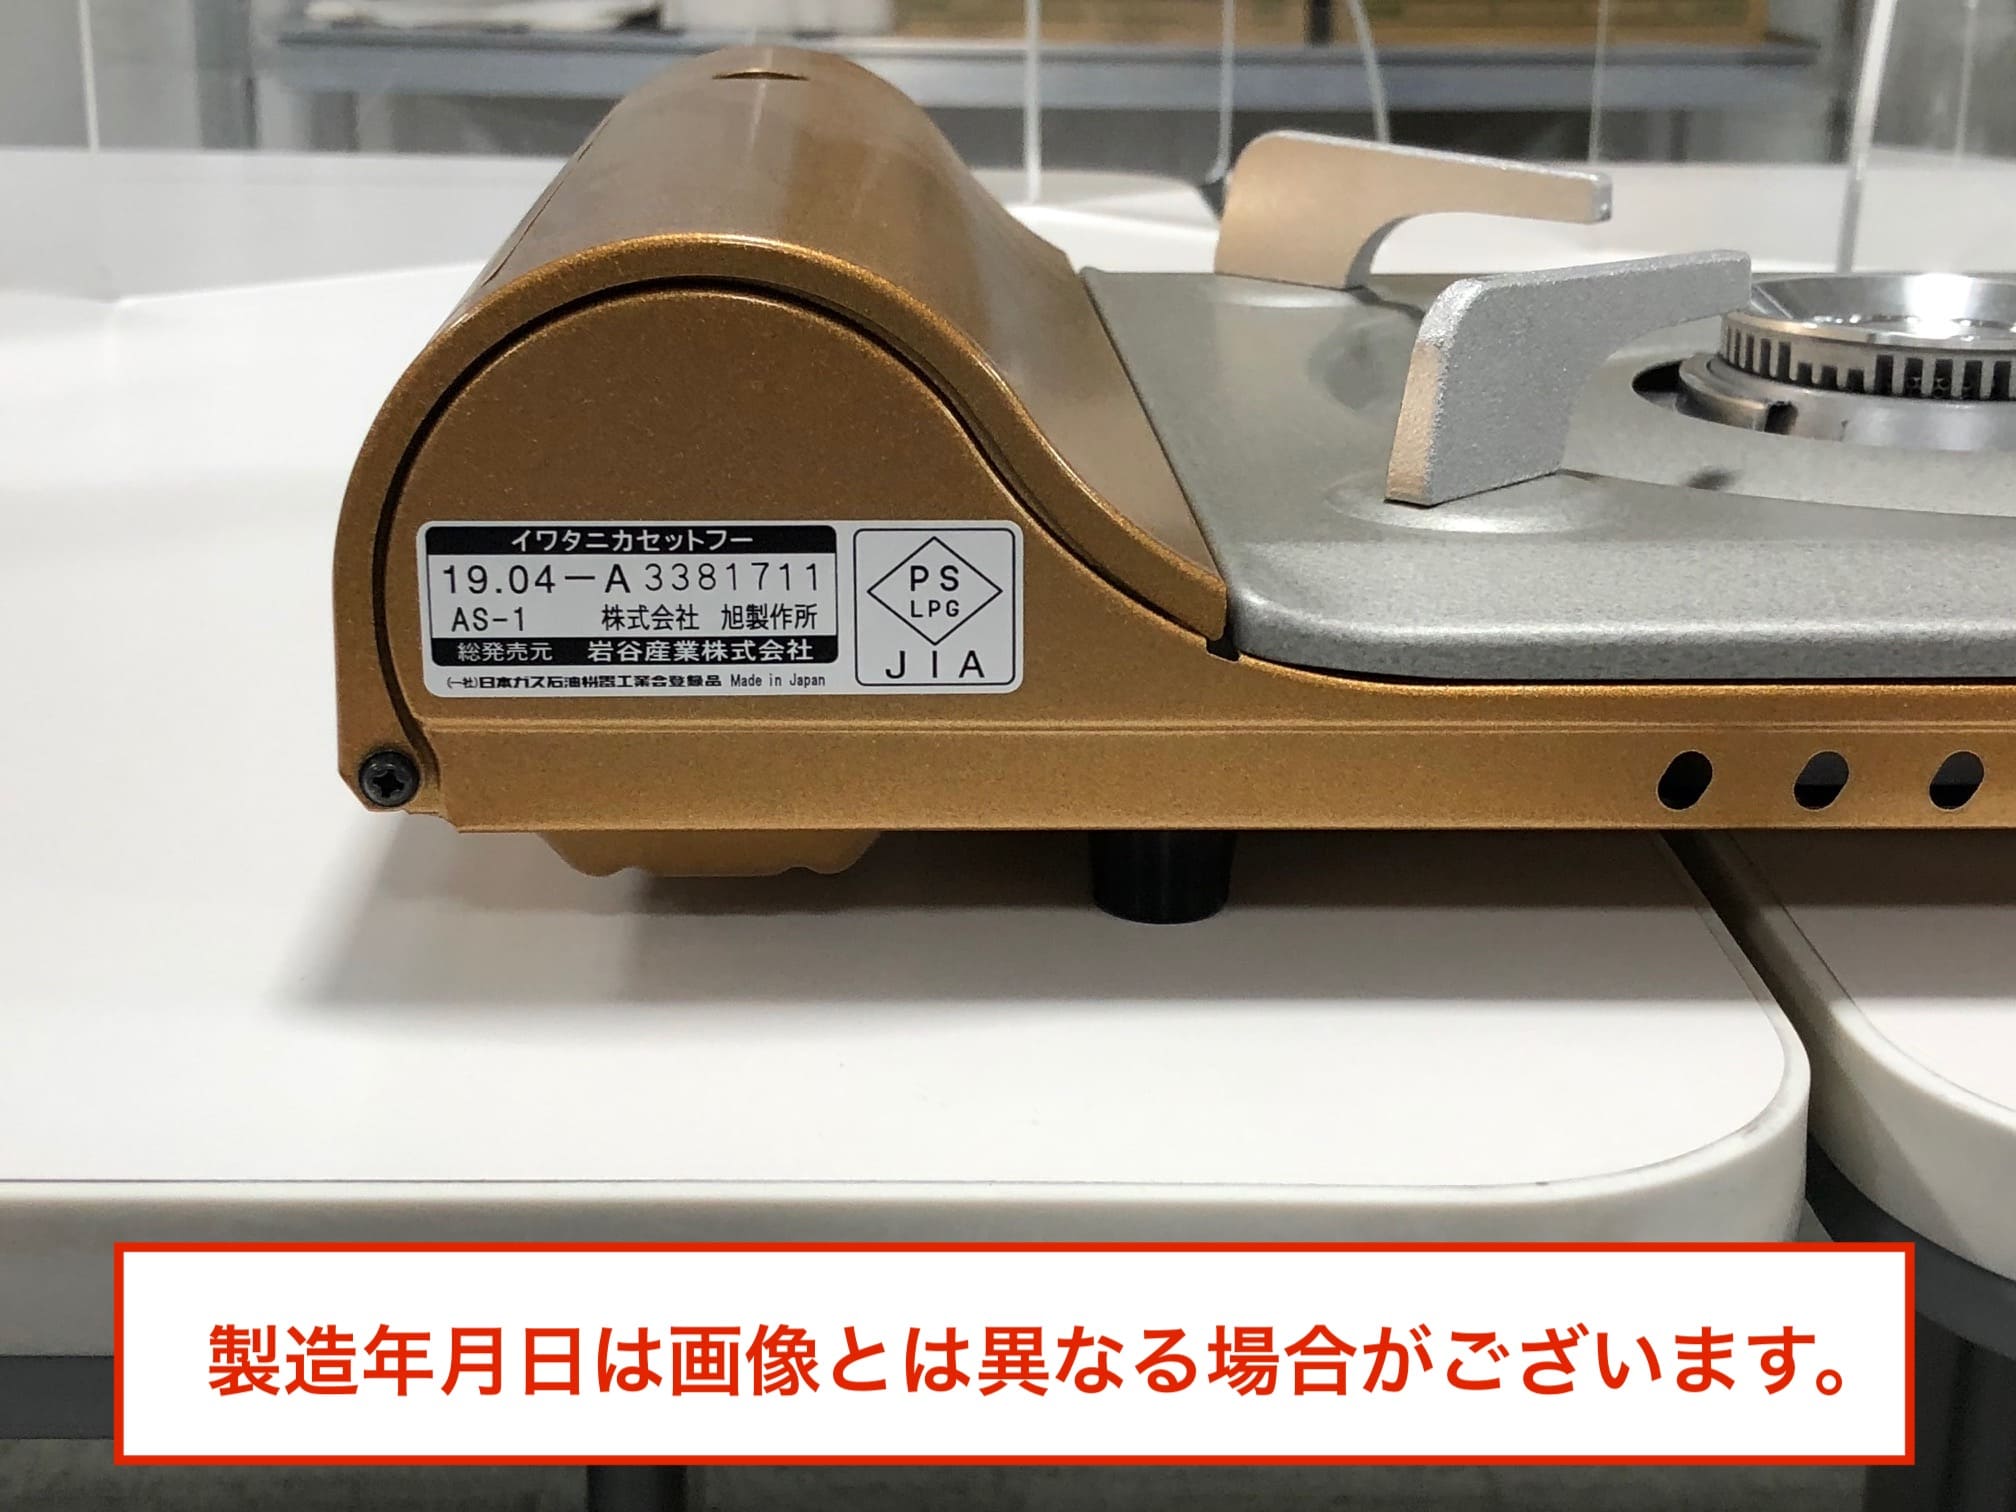 【送料無料】イワタニ Iwatani カセットコンロ カセットフー 達人スリム CB-AS-1 薄型 卓上コンロ